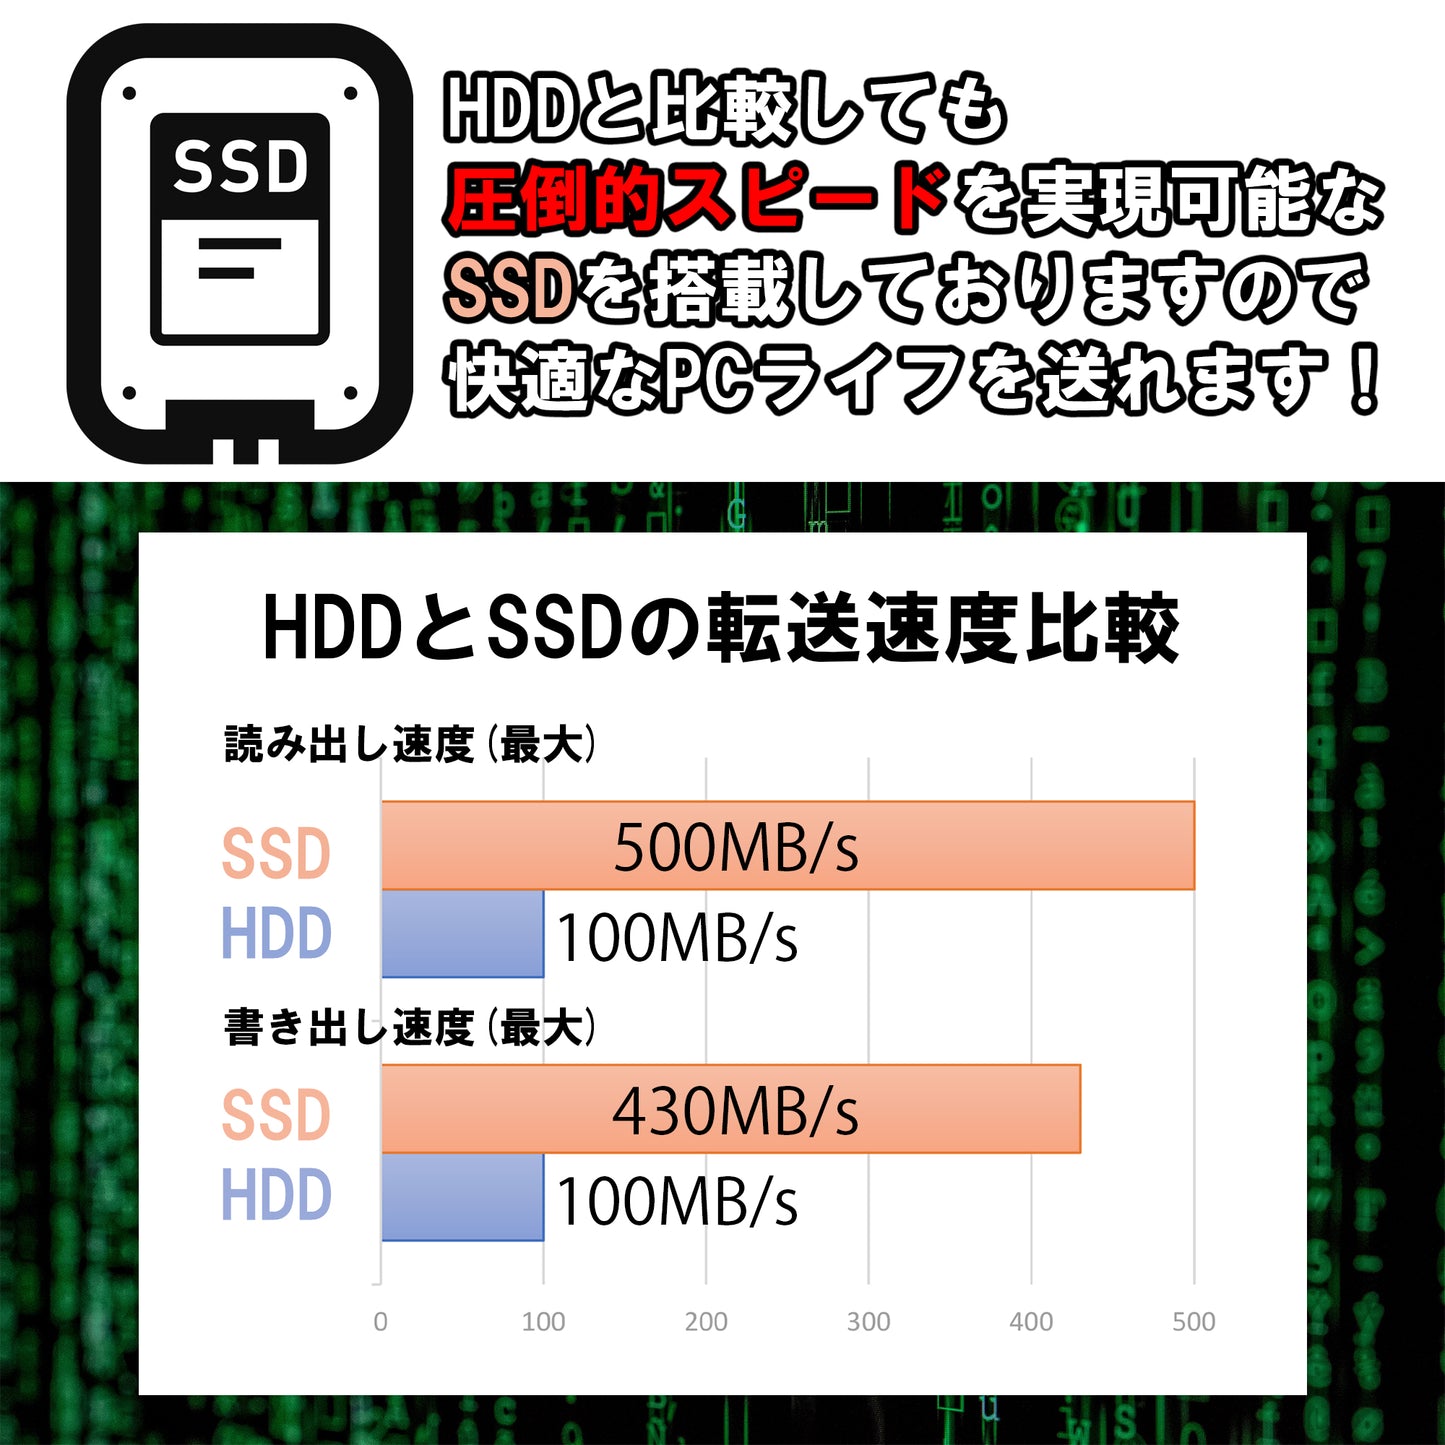 公式限定価格《国内ブランドランダム 15.6型 中古ノートPC》Office付き Windows11 第6世代 Core i5 メモリ4GB SSD128GB テンキー付き